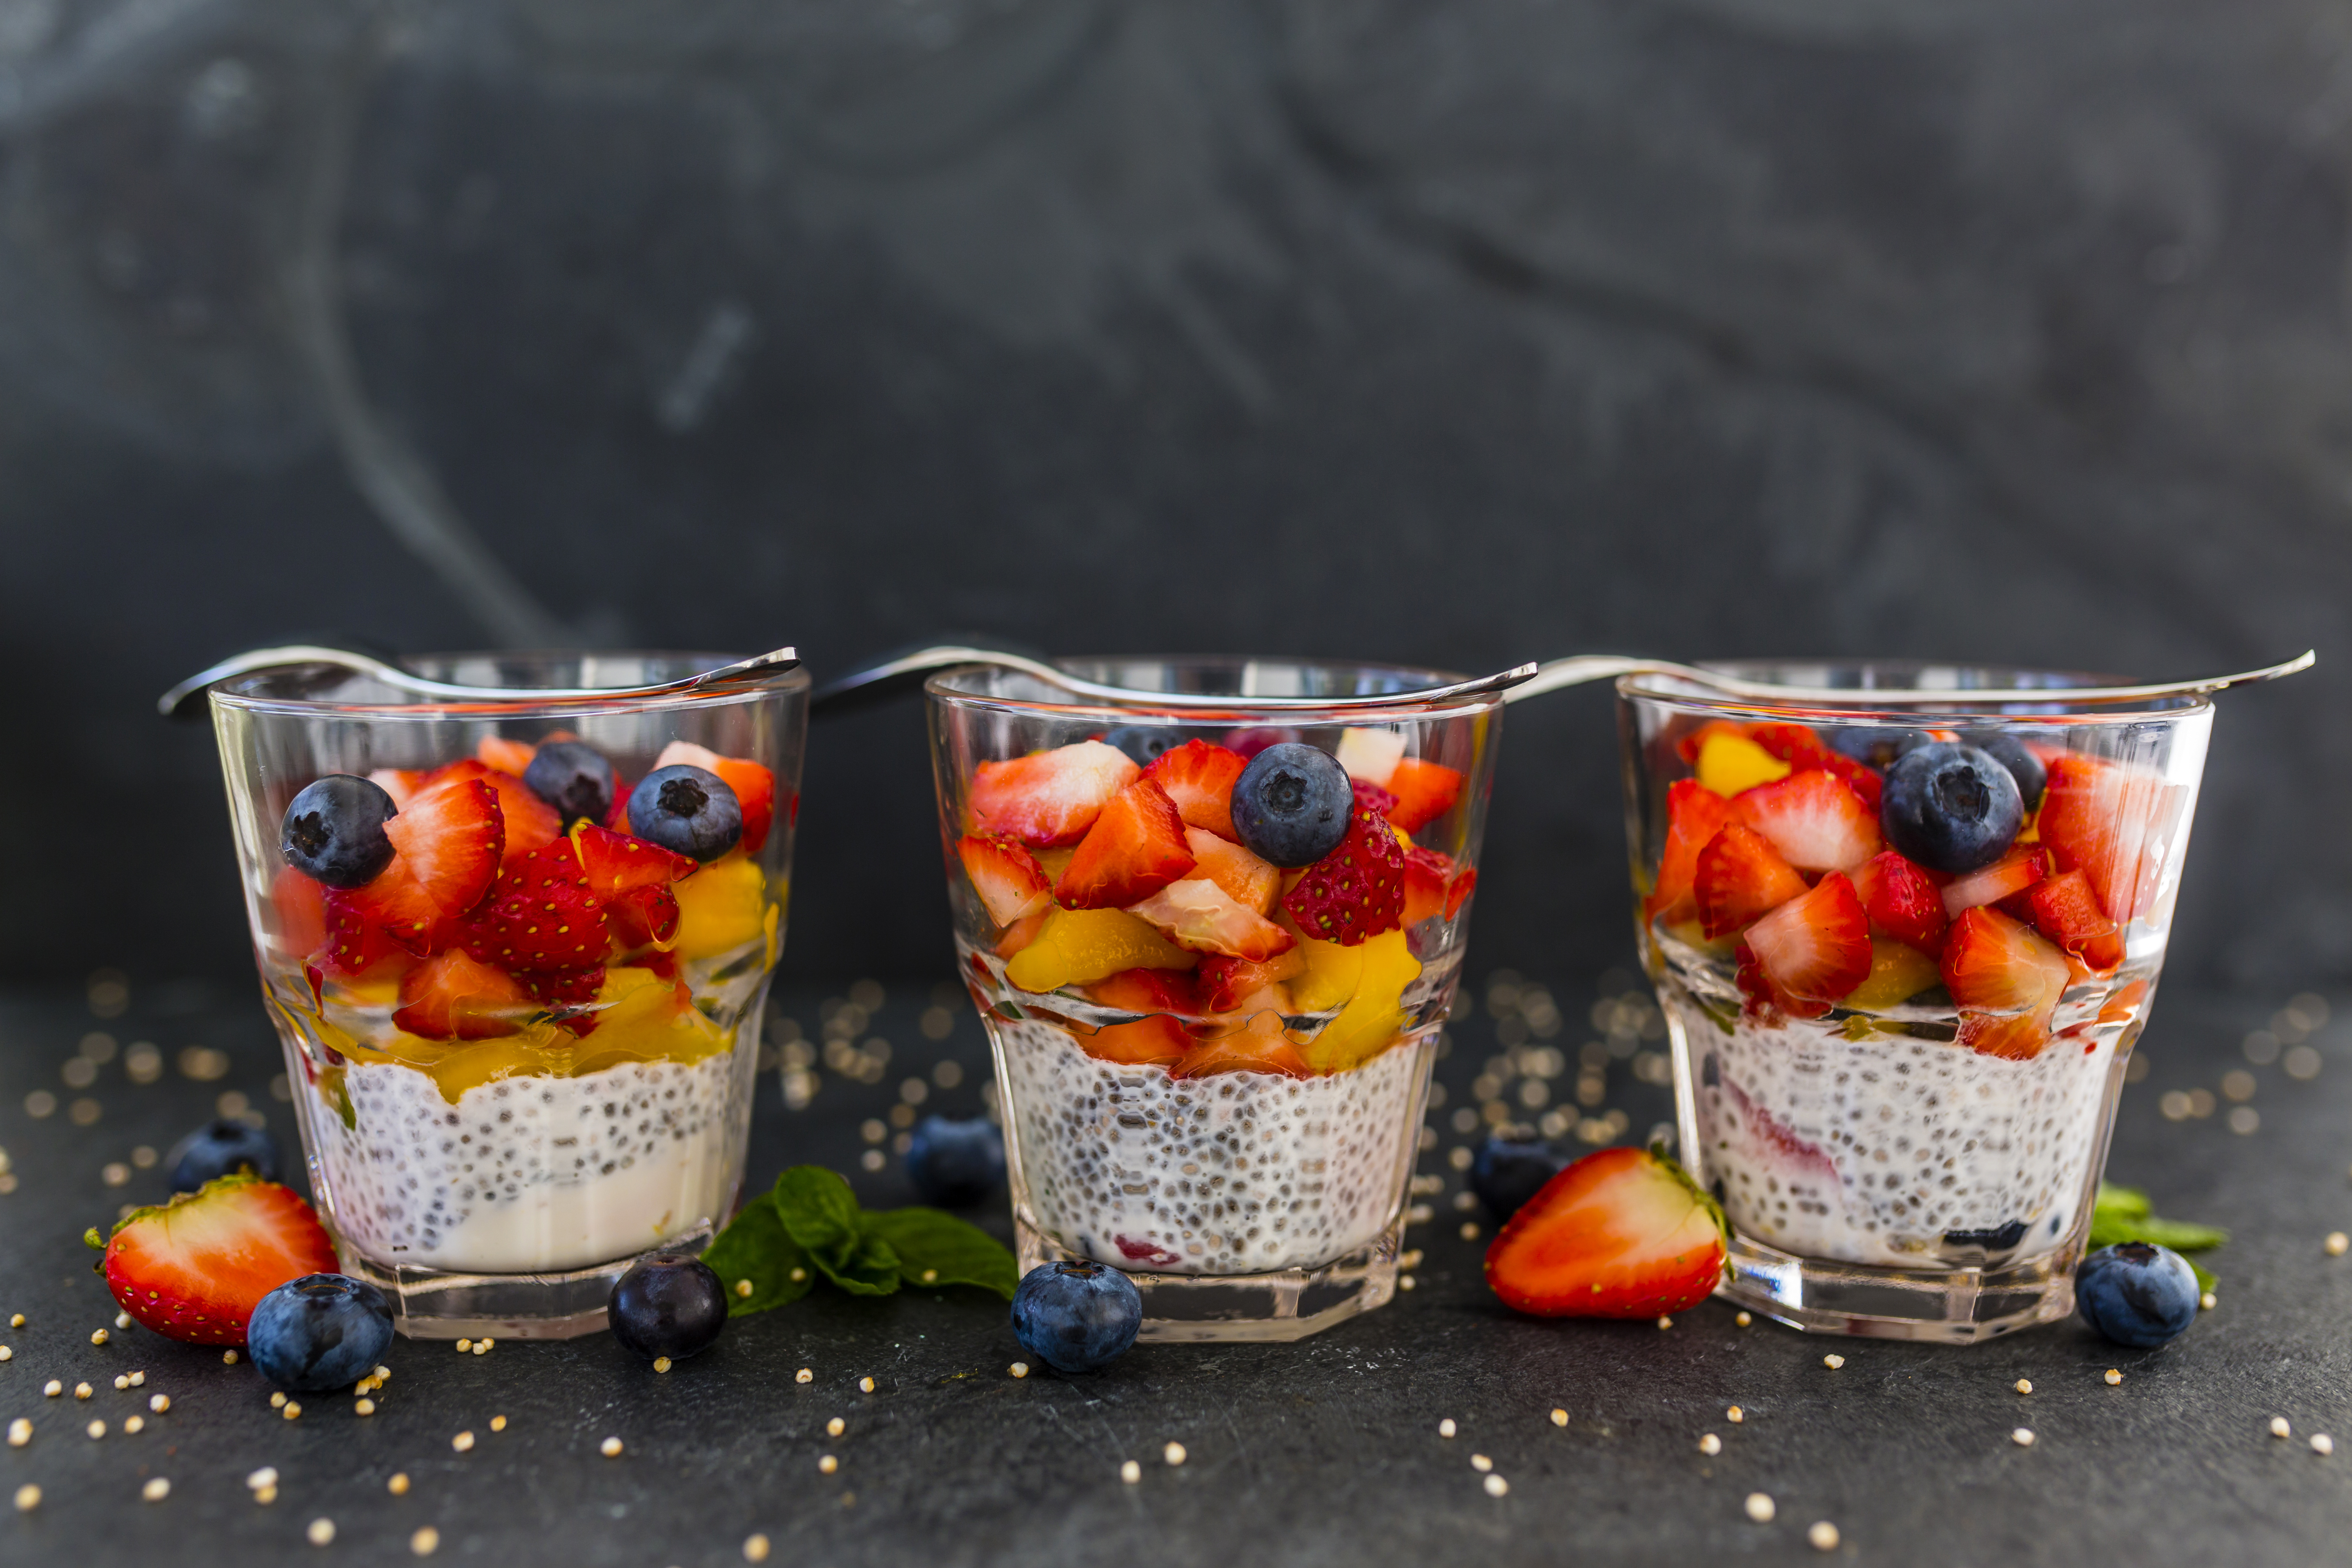 Фруктовые стаканчики. Фрукты в стаканчиках. Фруктовый стакан. Стаканчик с фруктами и ягодами. Фруктовый десерт в стакане.